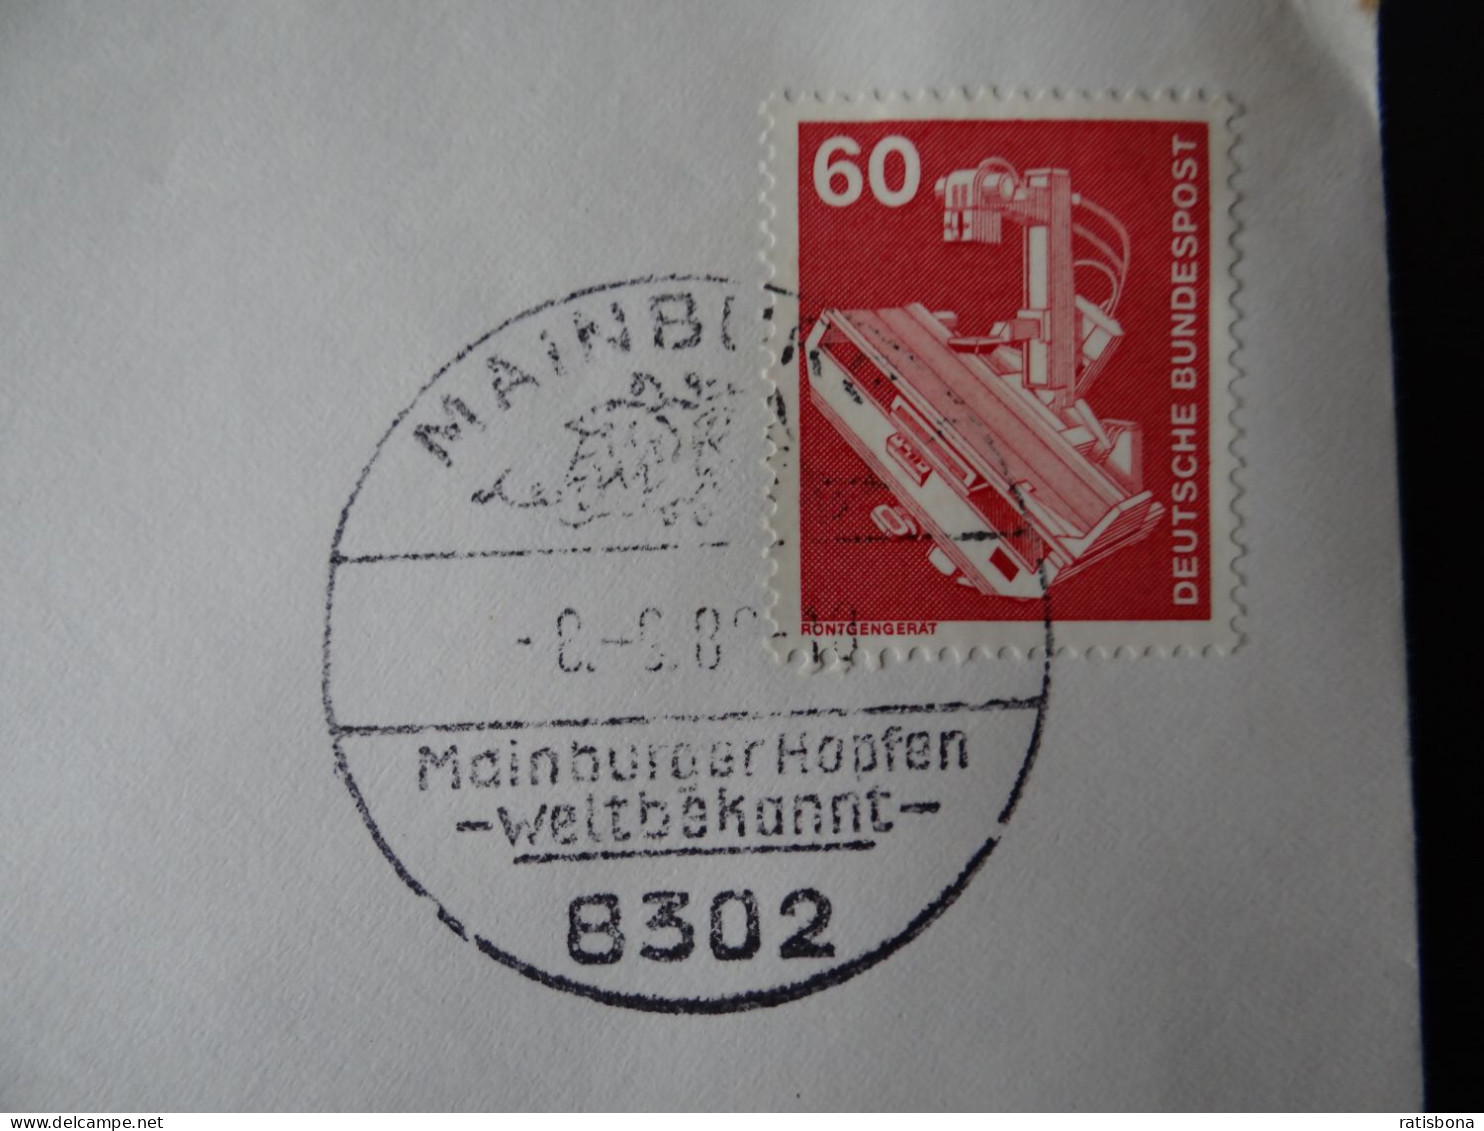 8302 Mainburg - MainburgerHopfen Weltbekannt - Sonderstempel Rund 1980 - Macchine Per Obliterare (EMA)